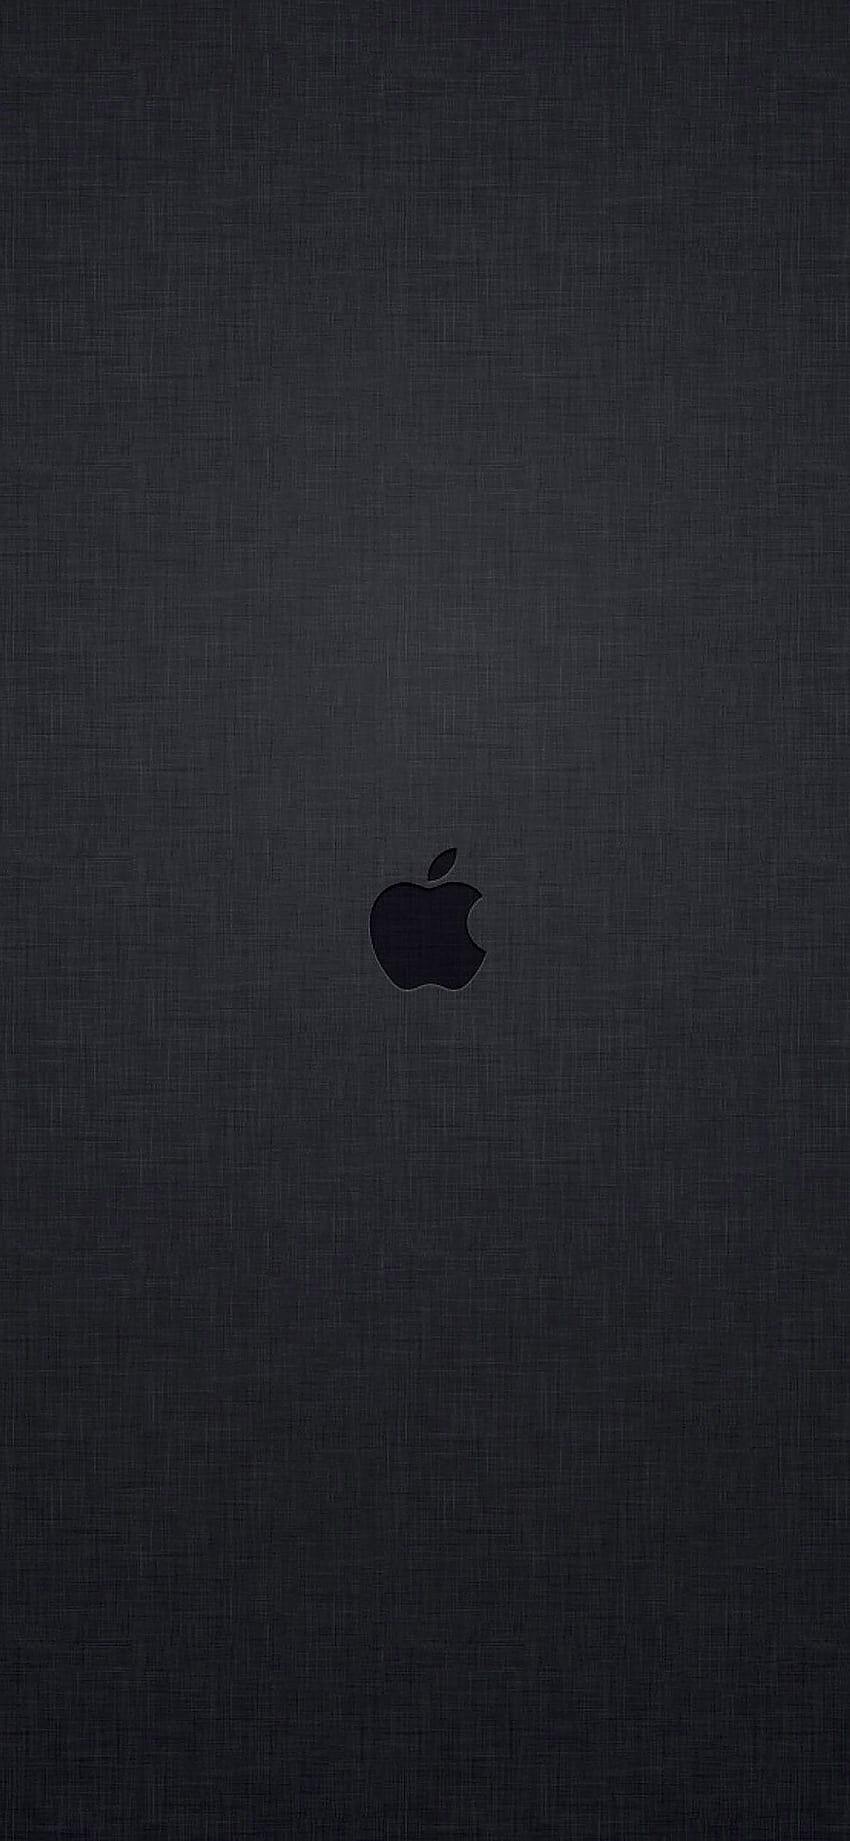 Wygaszacz ekranu z logo Apple przesłany przez Sarah ...słodki wygaszacz ekranu iPhone'a Tapeta na telefon HD